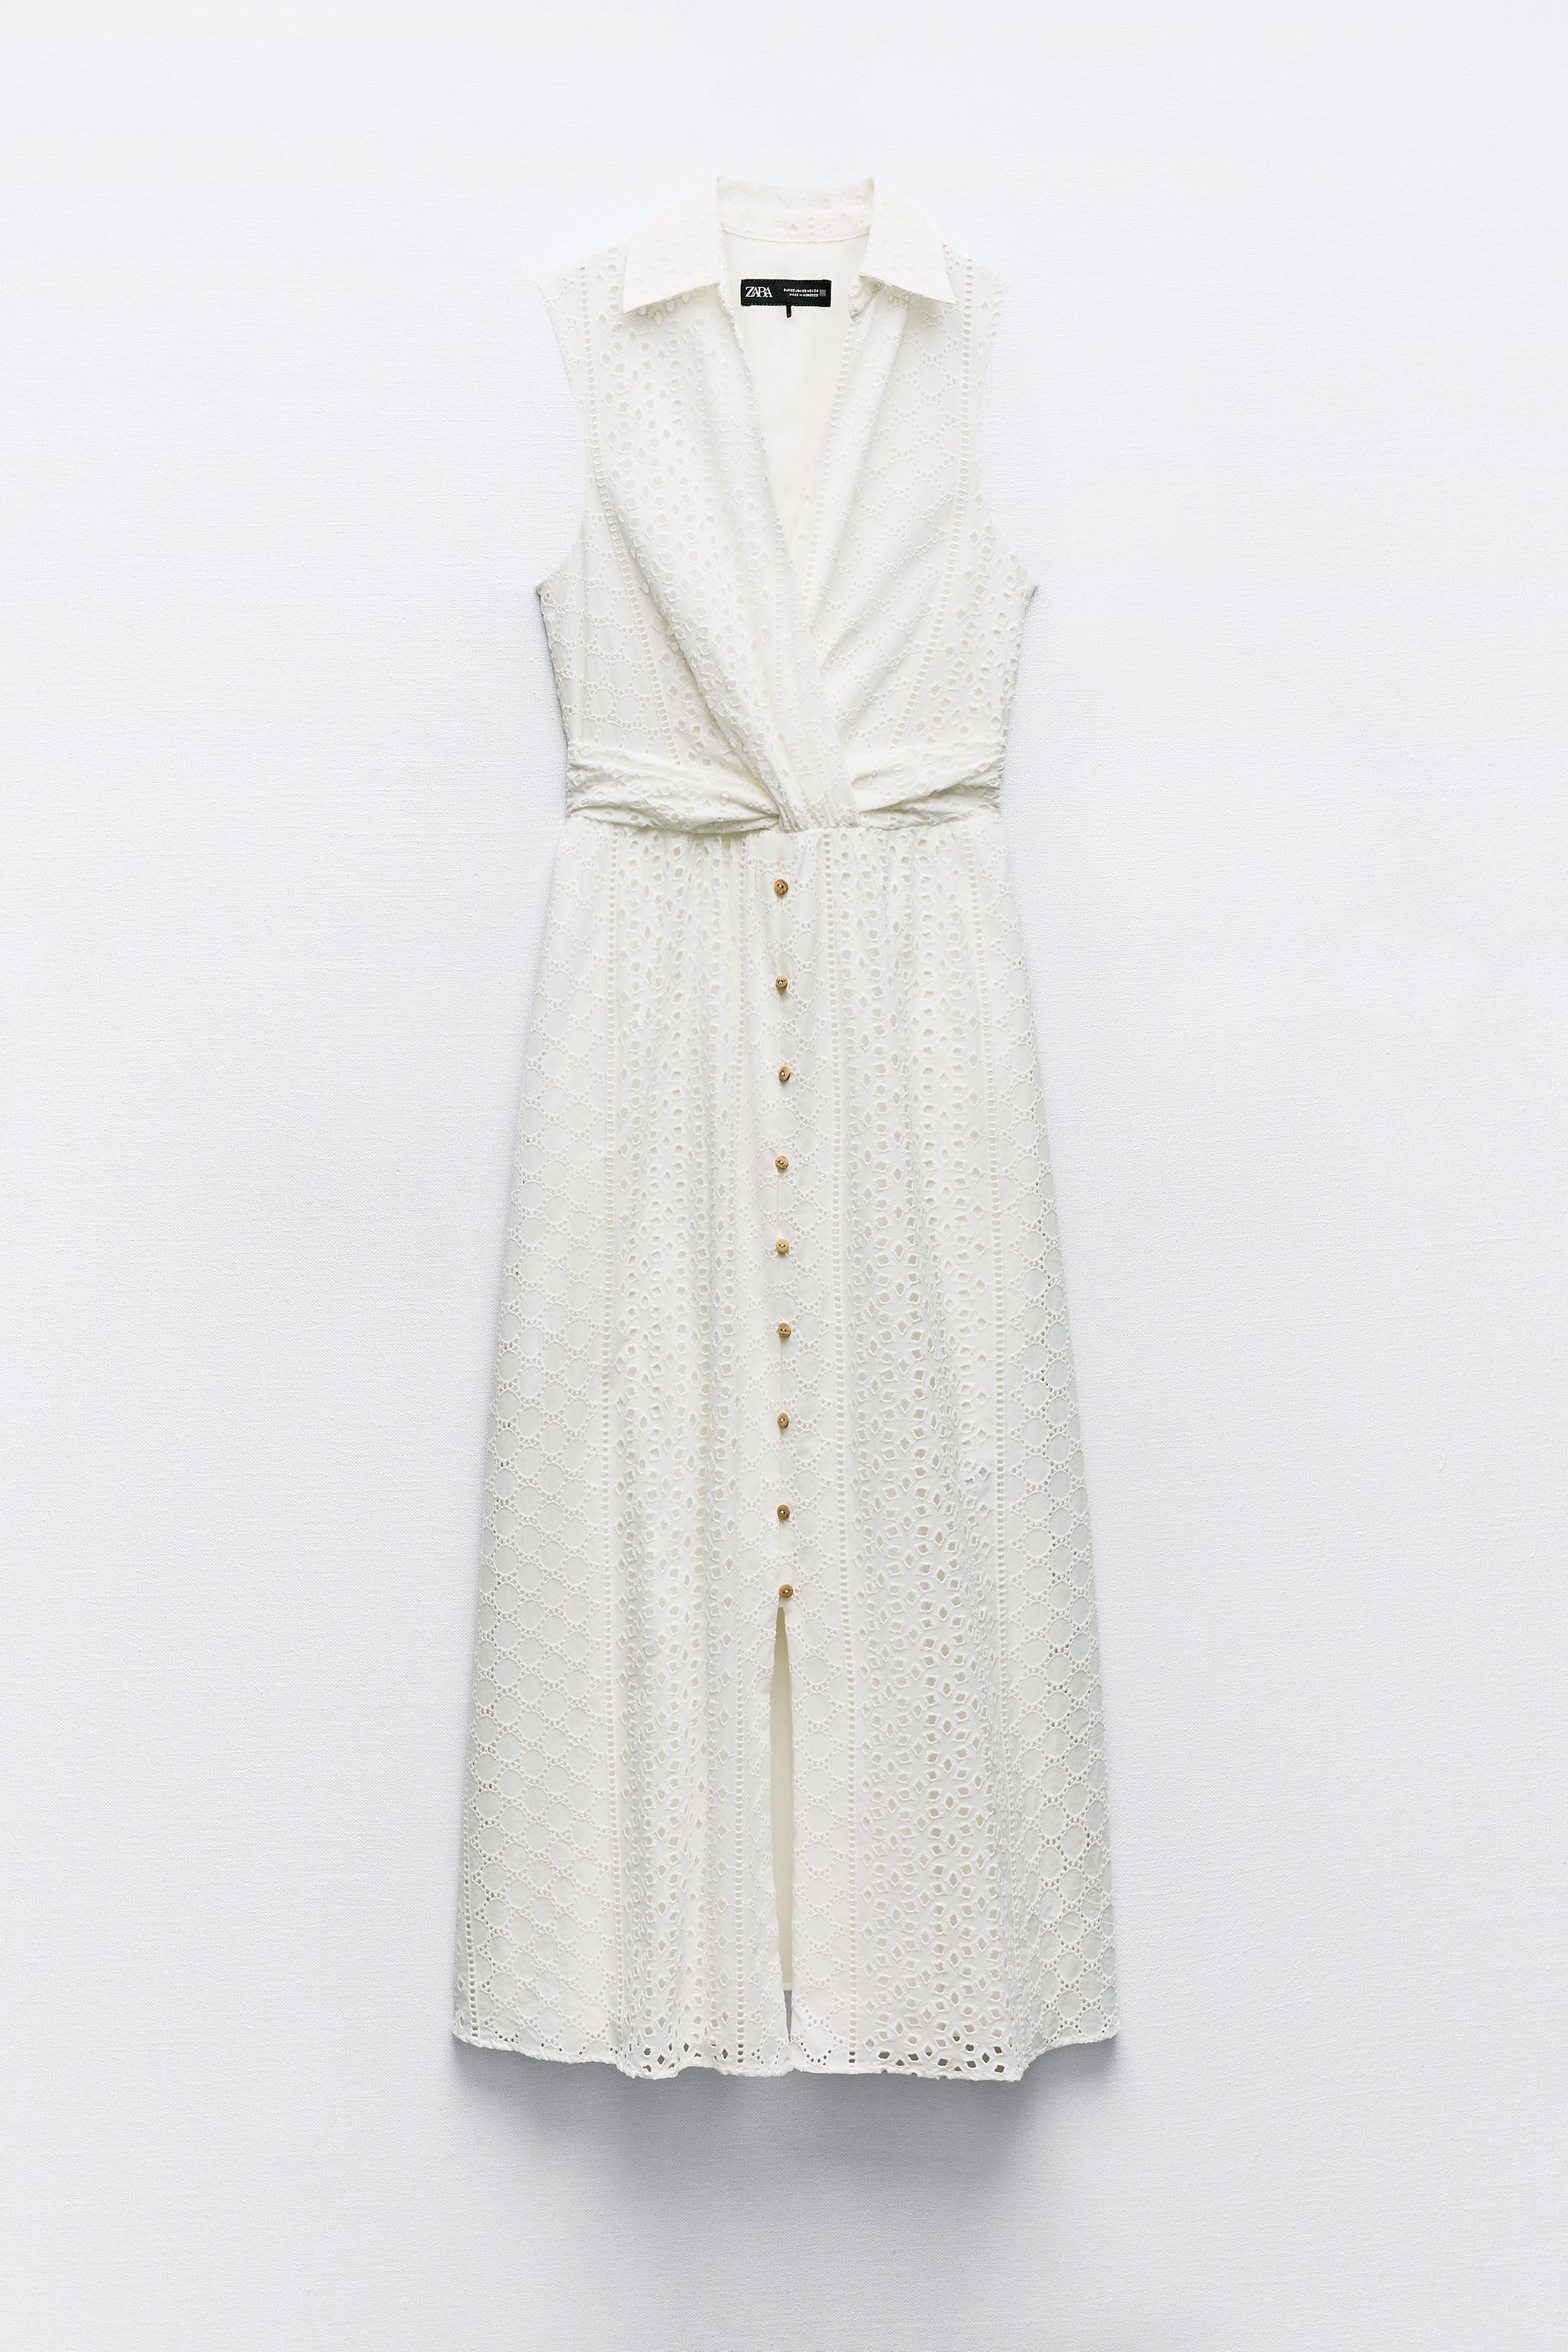 NWT Zara Openwork Embroidered White Dress Sz S Spring Summer SOLDOUT